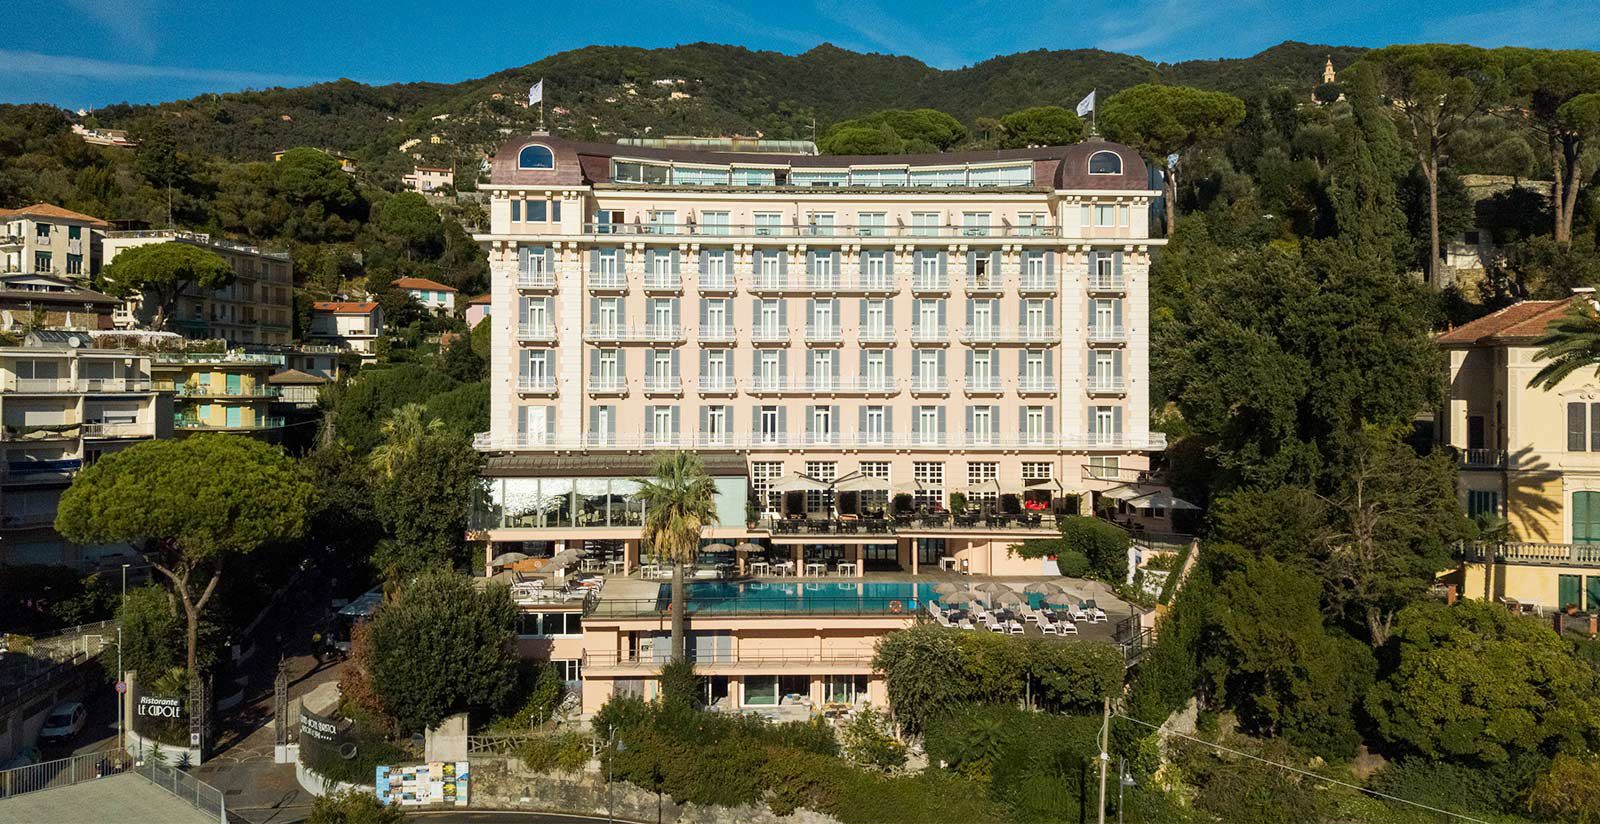 Grand Hotel Bristol - Hotel 5 stelle per vacanza in famiglia a Rapallo 5